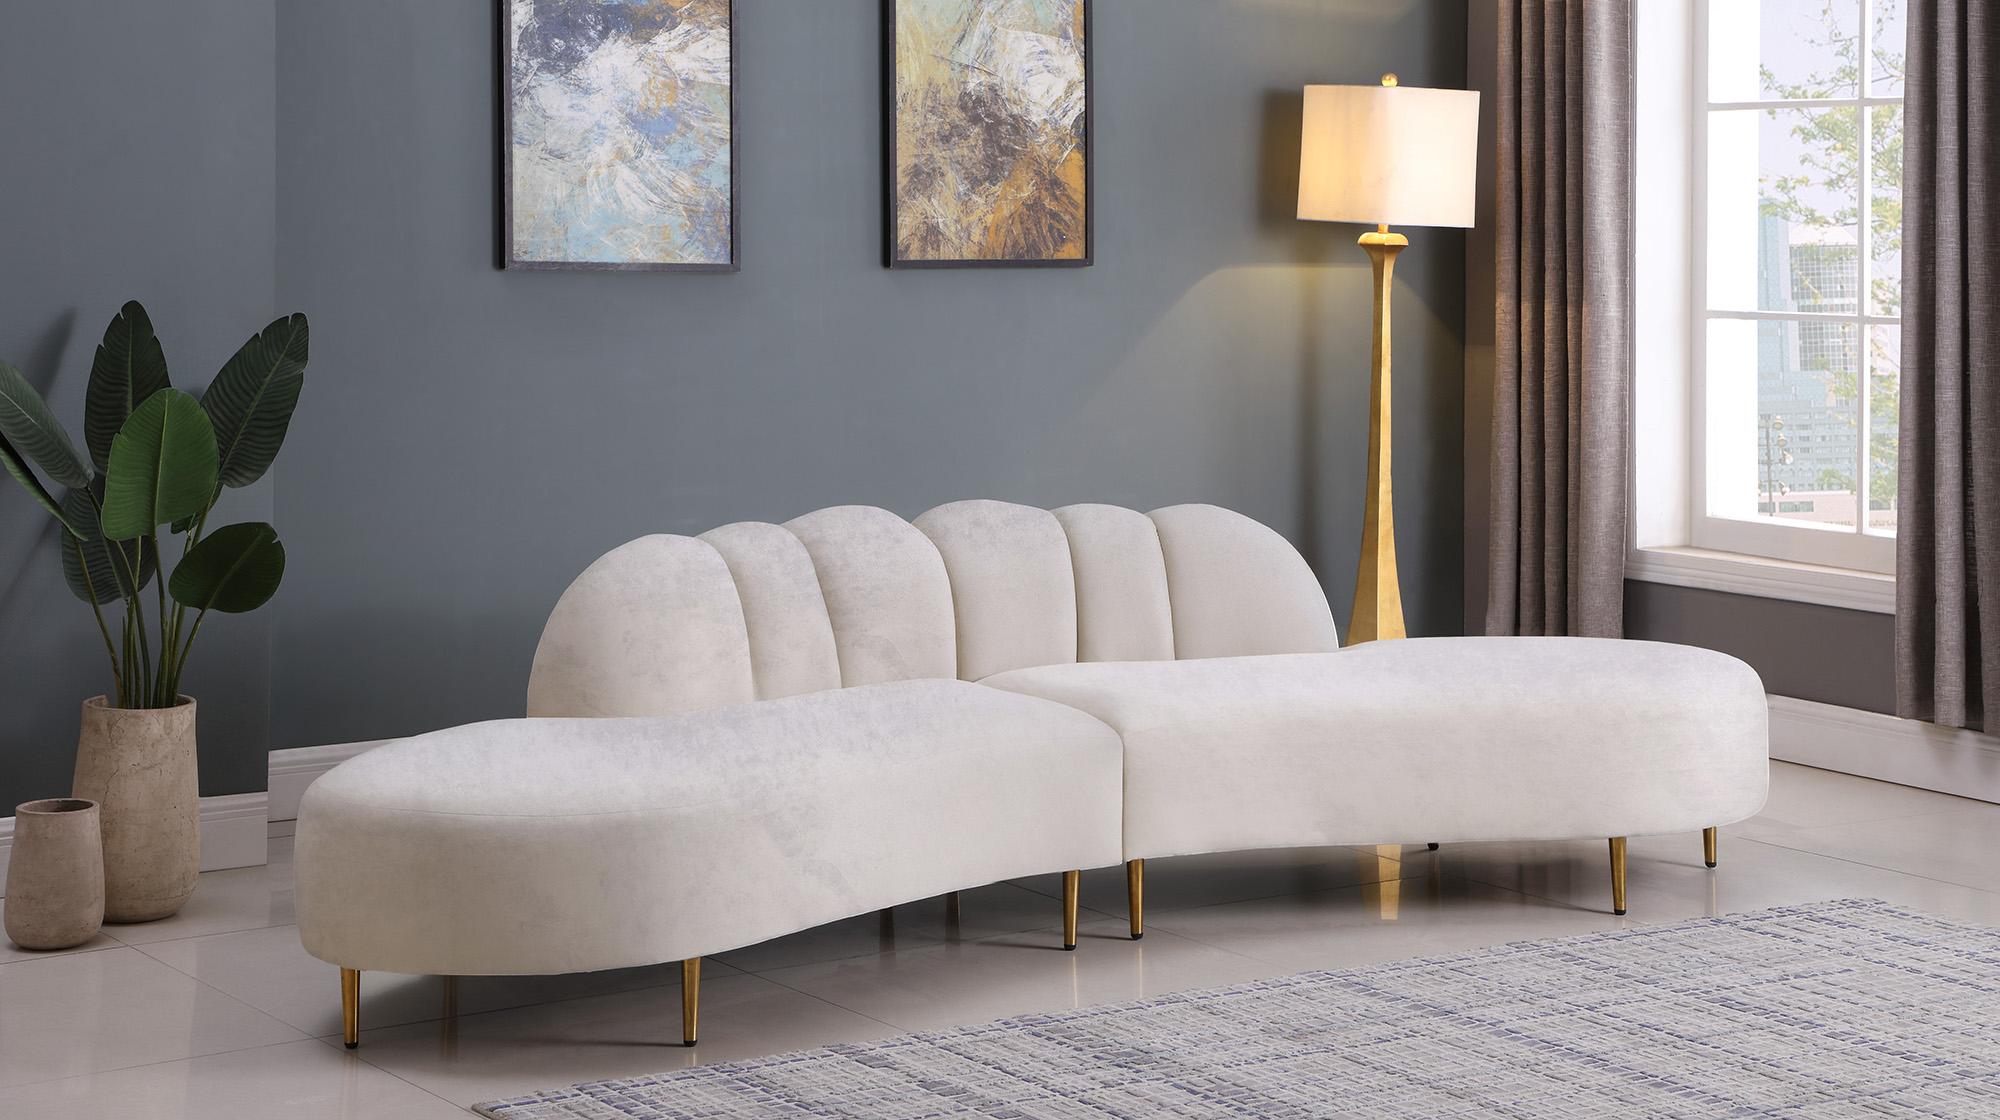 

    
Meridian Furniture DIVINE 618Cream Sectional Sofa Cream 618Cream-Sectional
